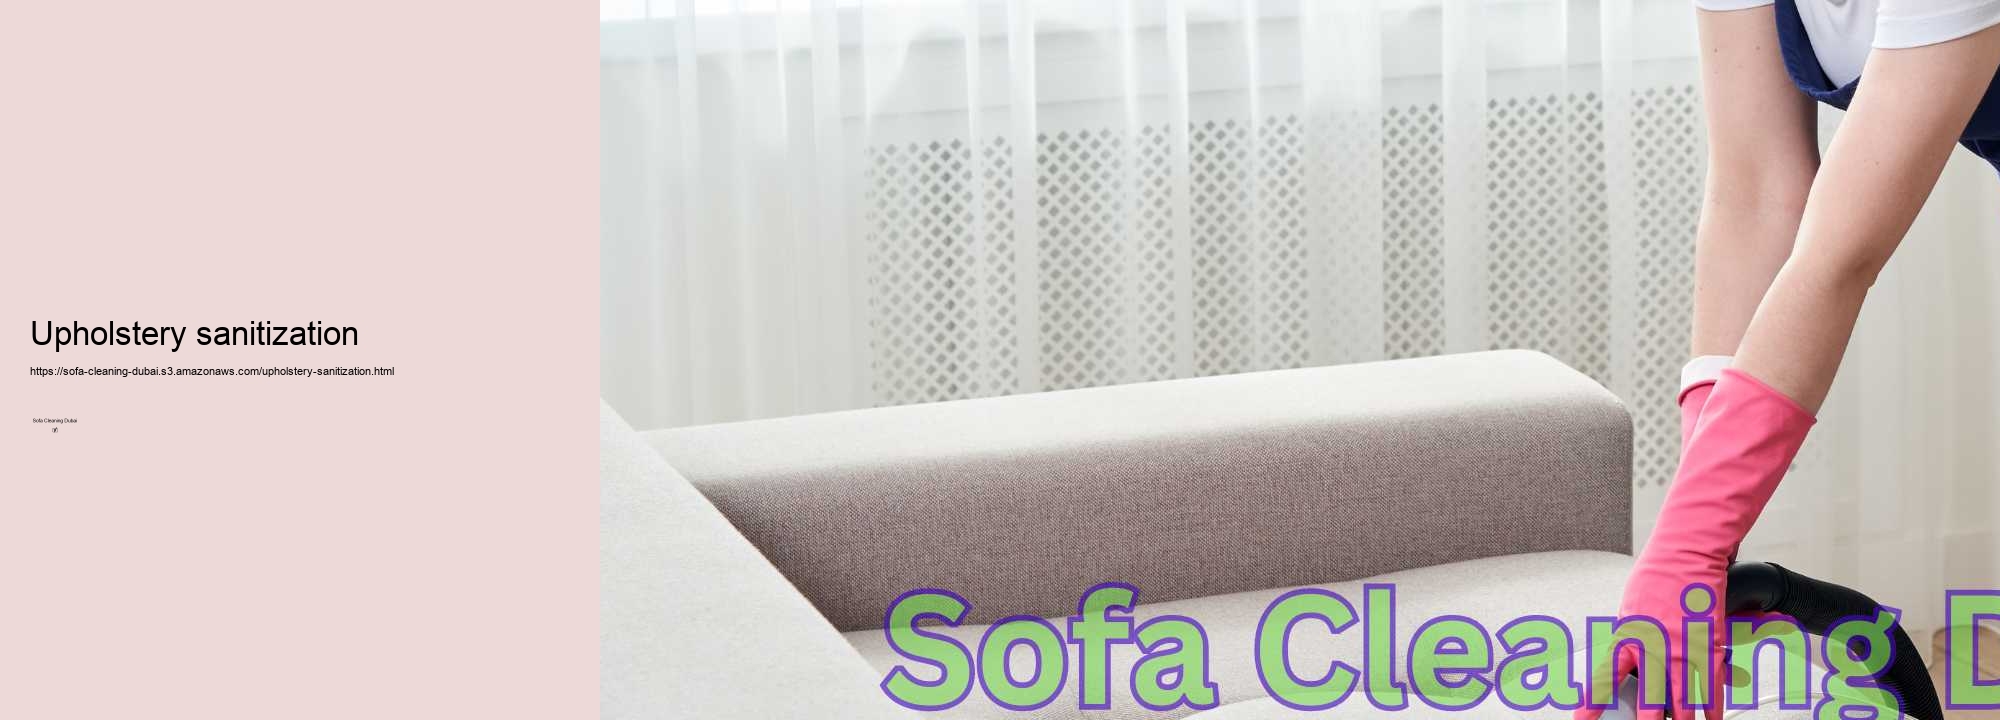 Upholstery sanitization